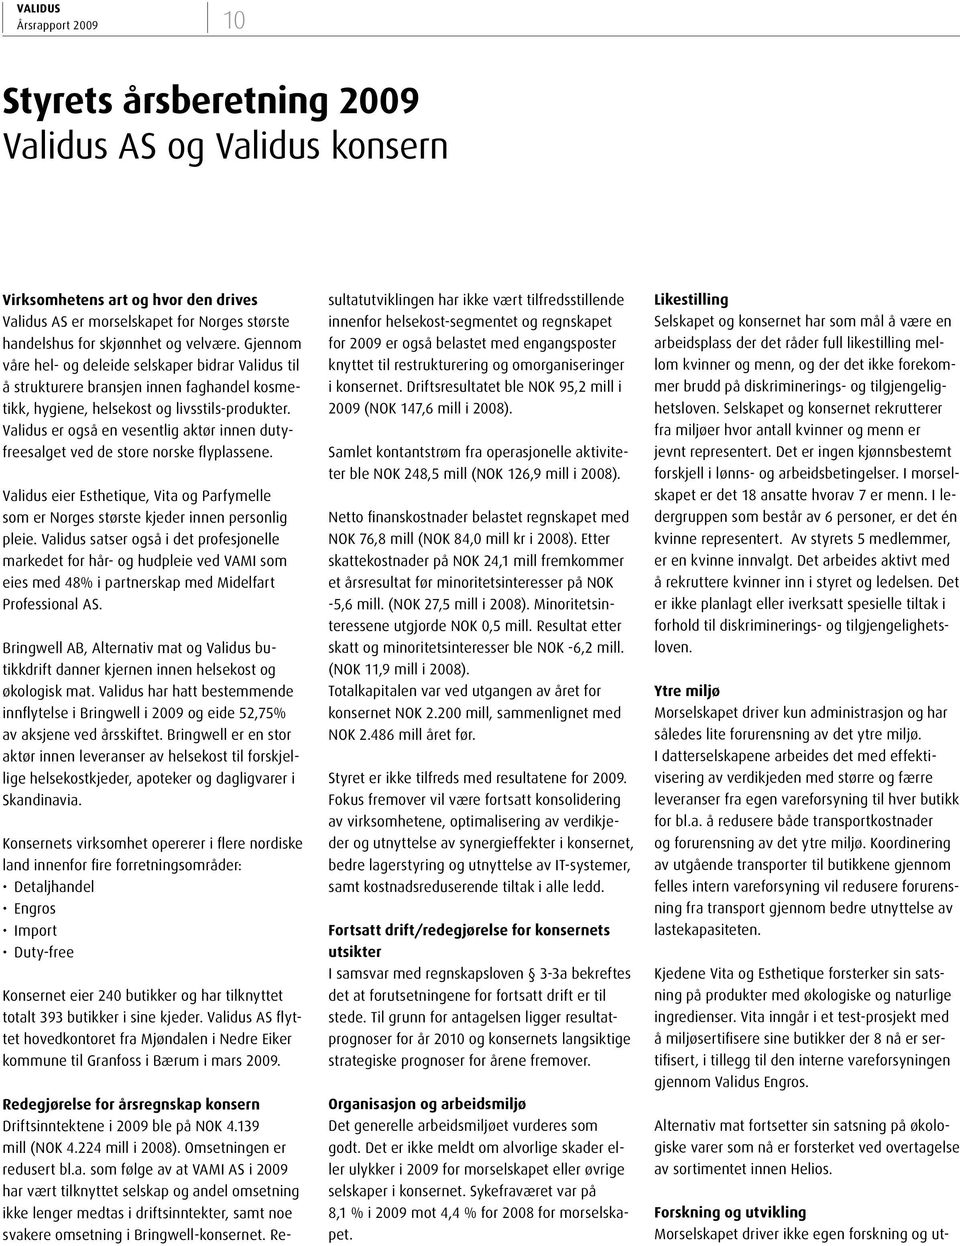 Validus er også en vesentlig aktør innen dutyfreesalget ved de store norske flyplassene. Validus eier Esthetique, Vita og Parfymelle som er Norges største kjeder innen personlig pleie.